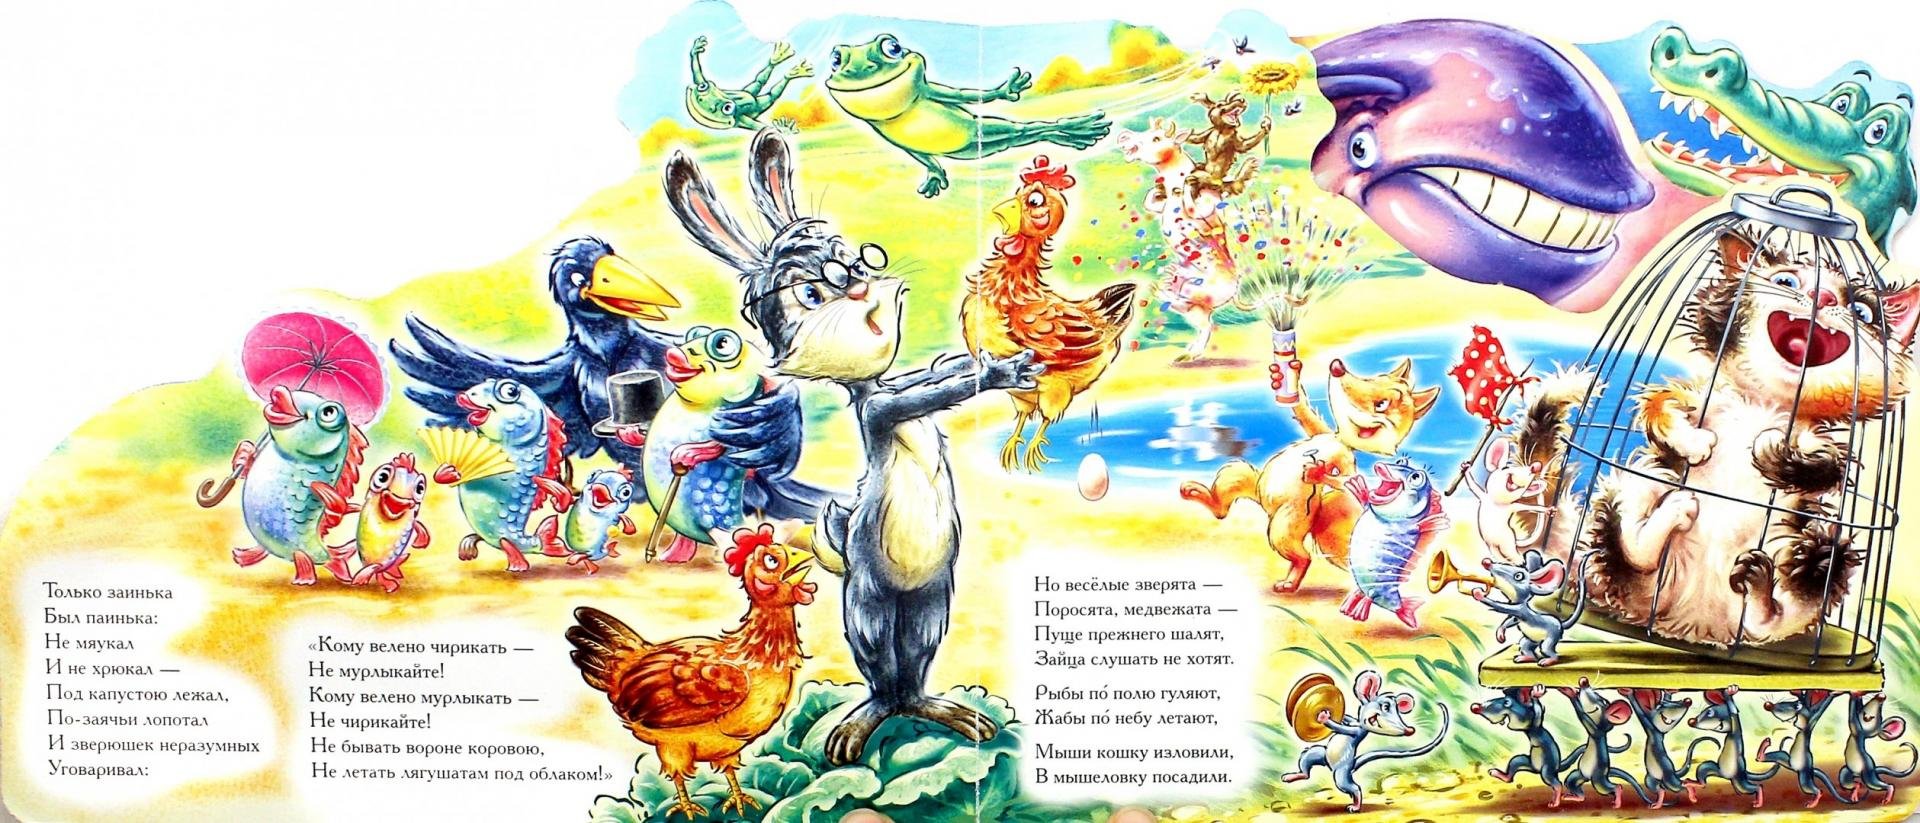 Иллюстрация к сказке путаница Корнея Чуковского